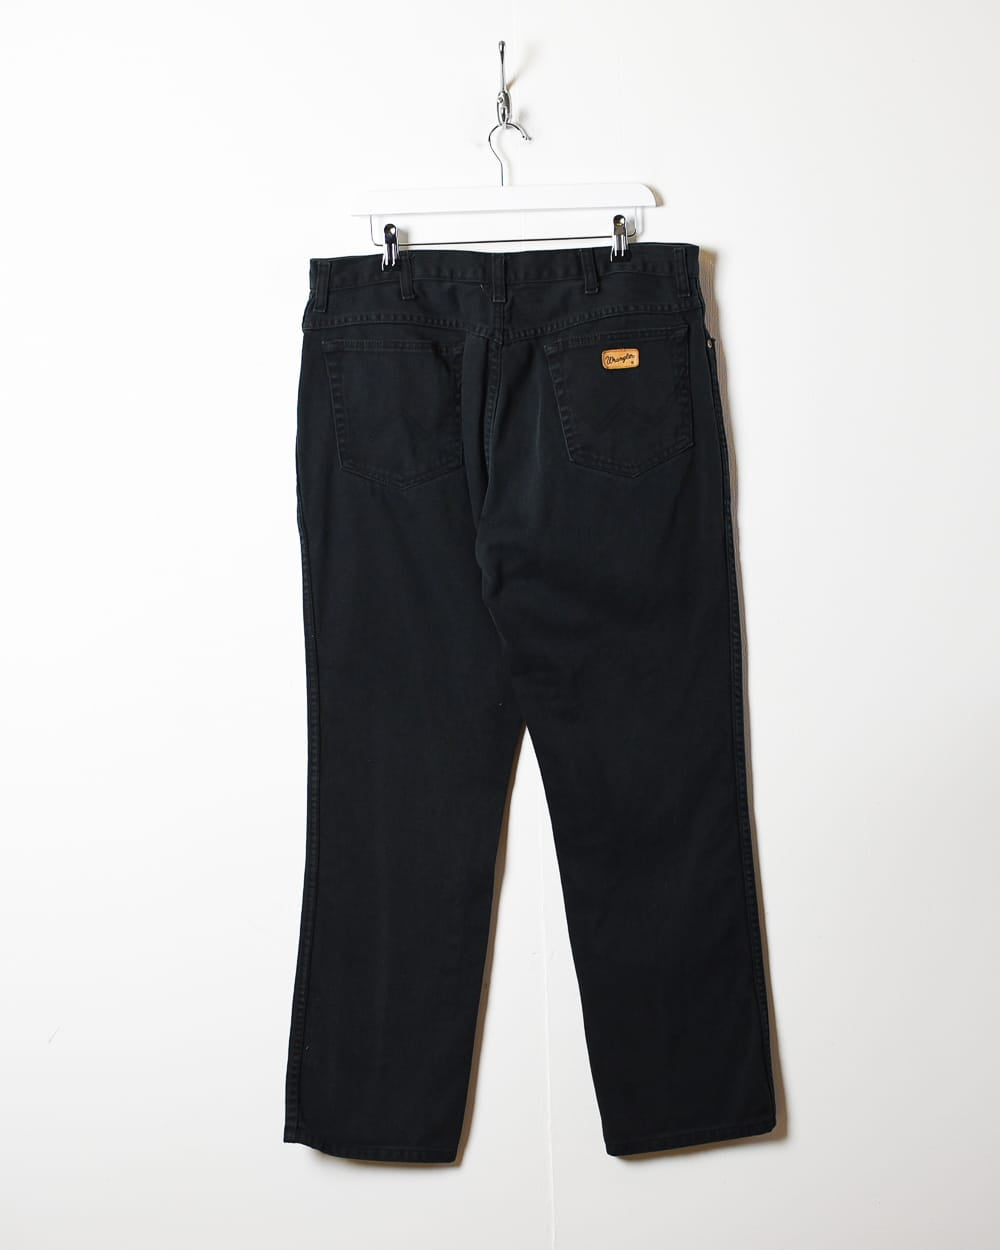 Black Wrangler Jeans - W38 L31